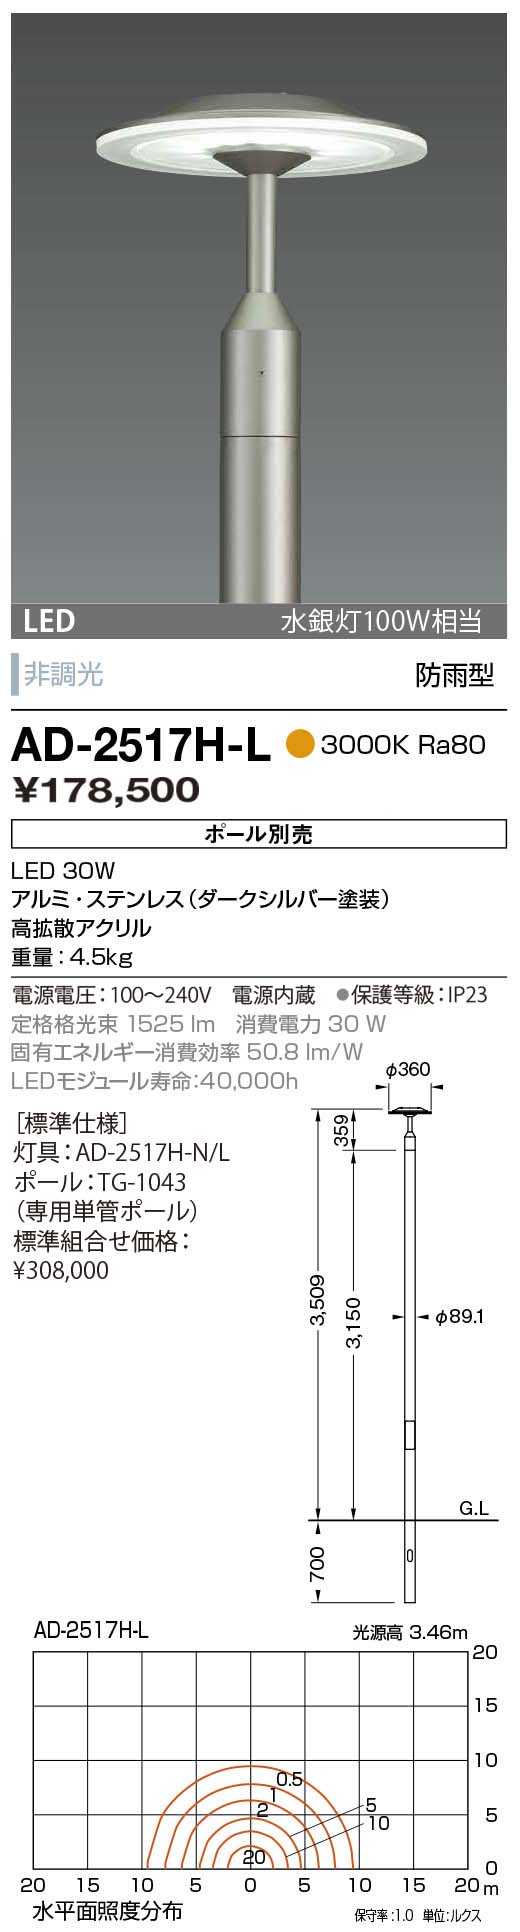 販売実績No.1 照明ポイントAD-2987-N ガーデンライト 山田照明 yamada 照明器具